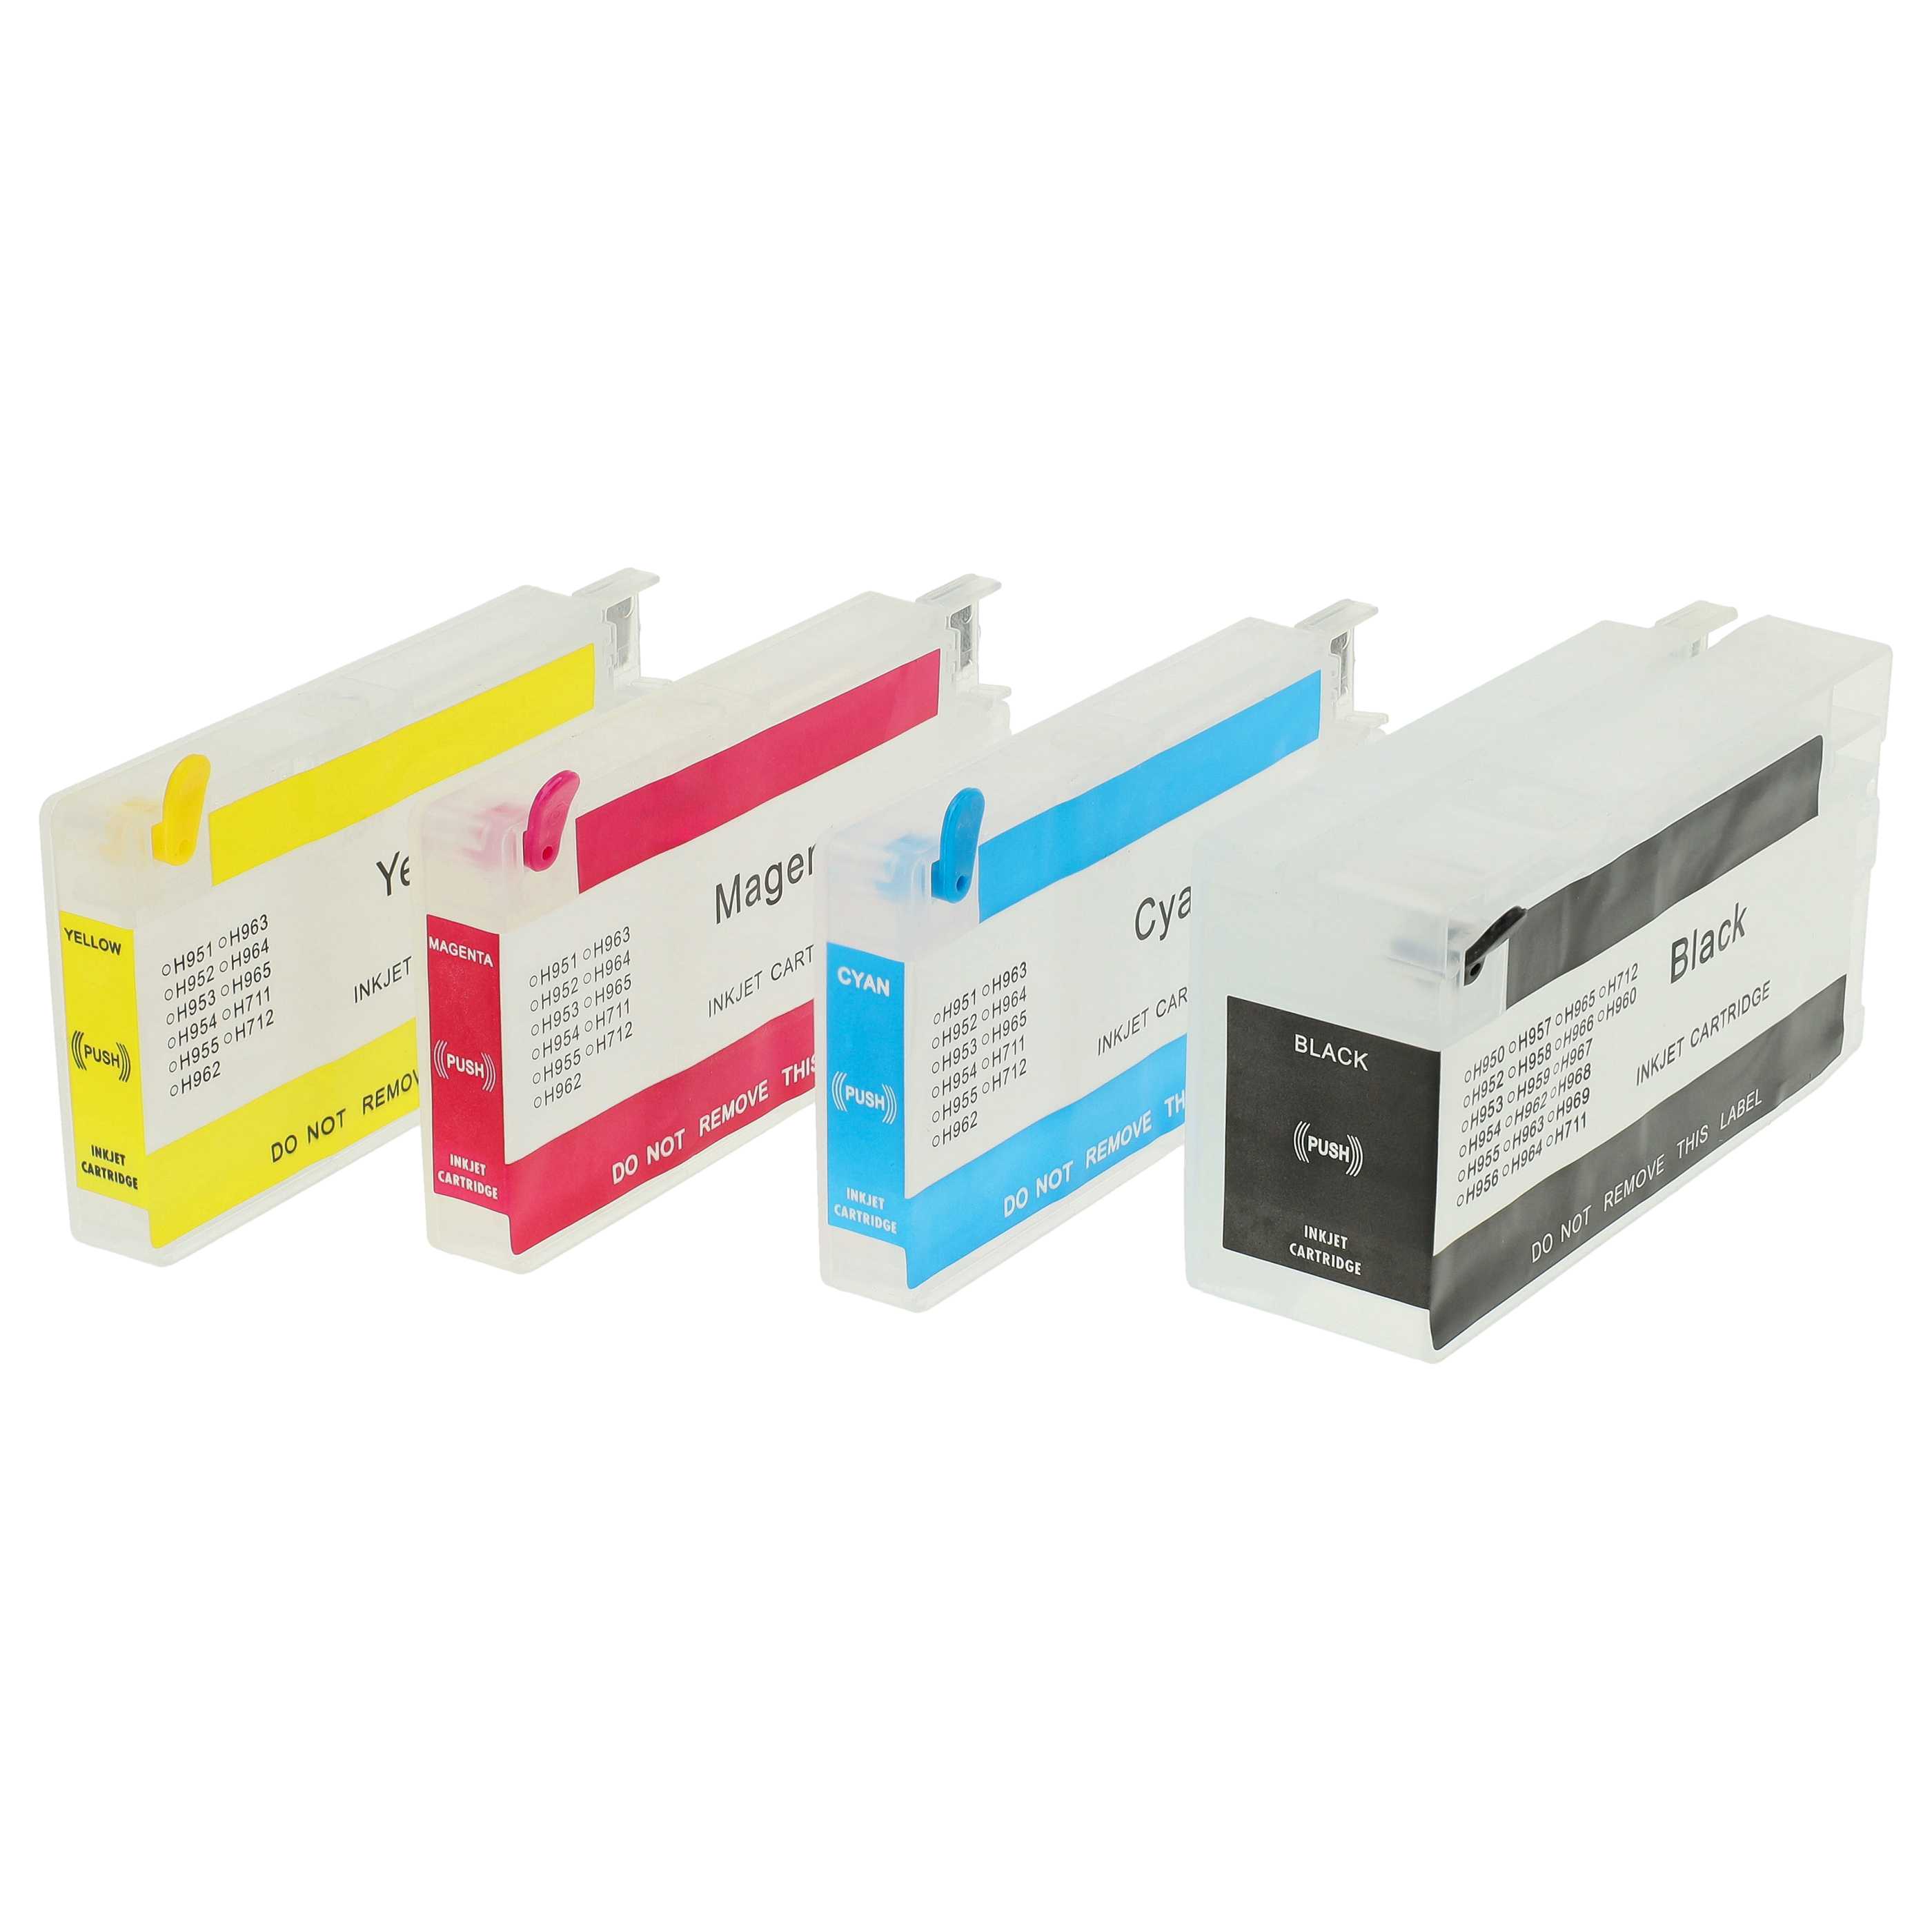 4x Wieczne kartridże do drukarki CISS zam. HP 950, 951, 950XL, 951XL - B/C/M/Y + chip